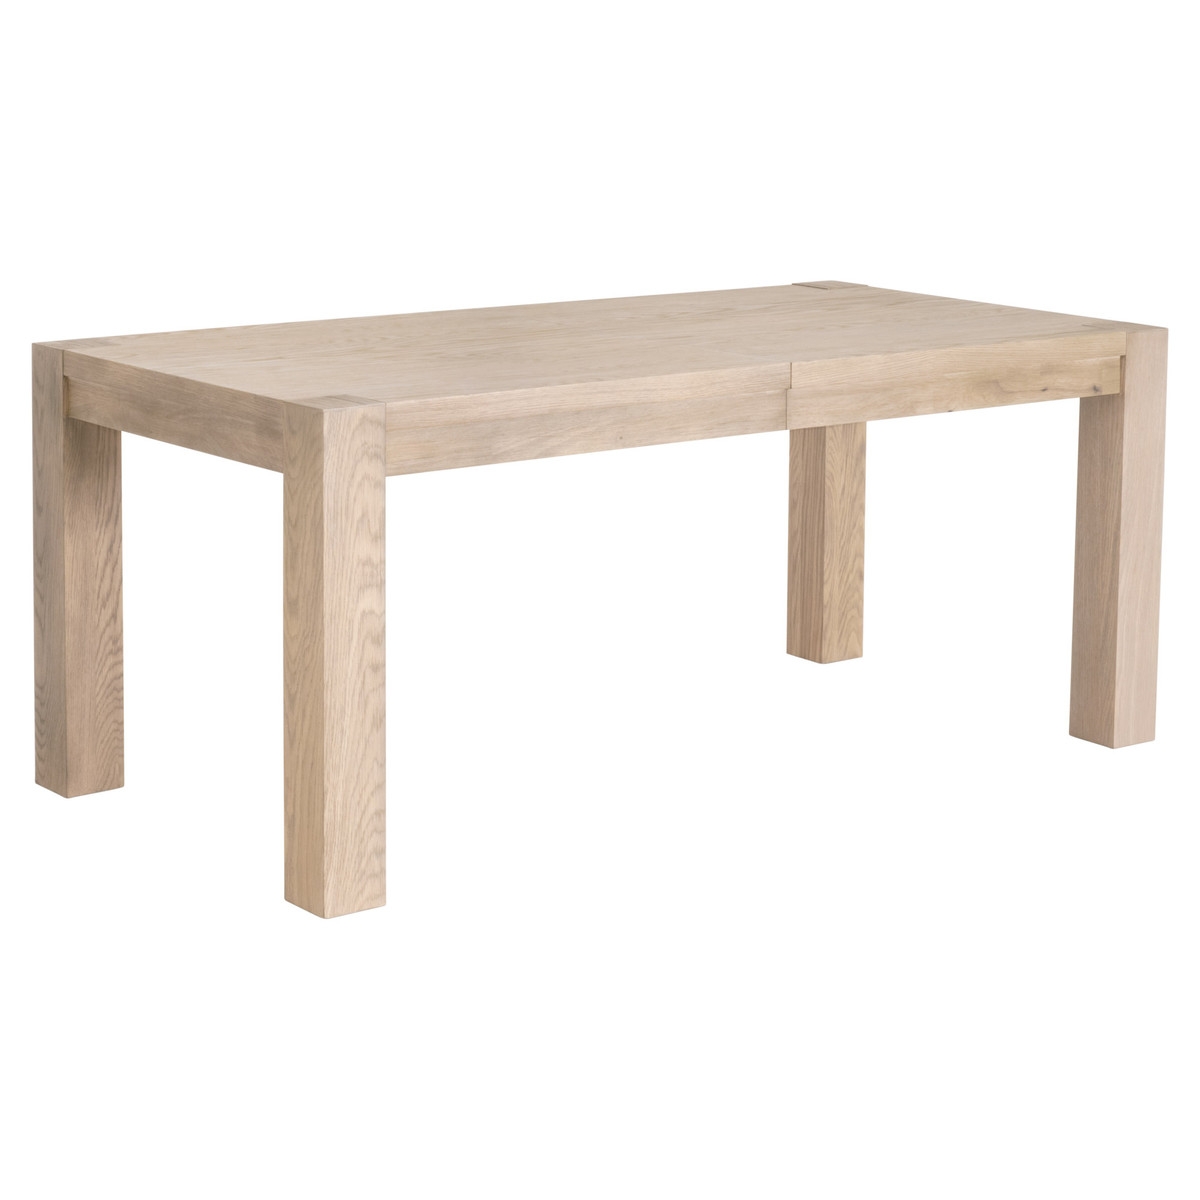 Adler Extension Dining Table /Light Honey Oak - Image 5